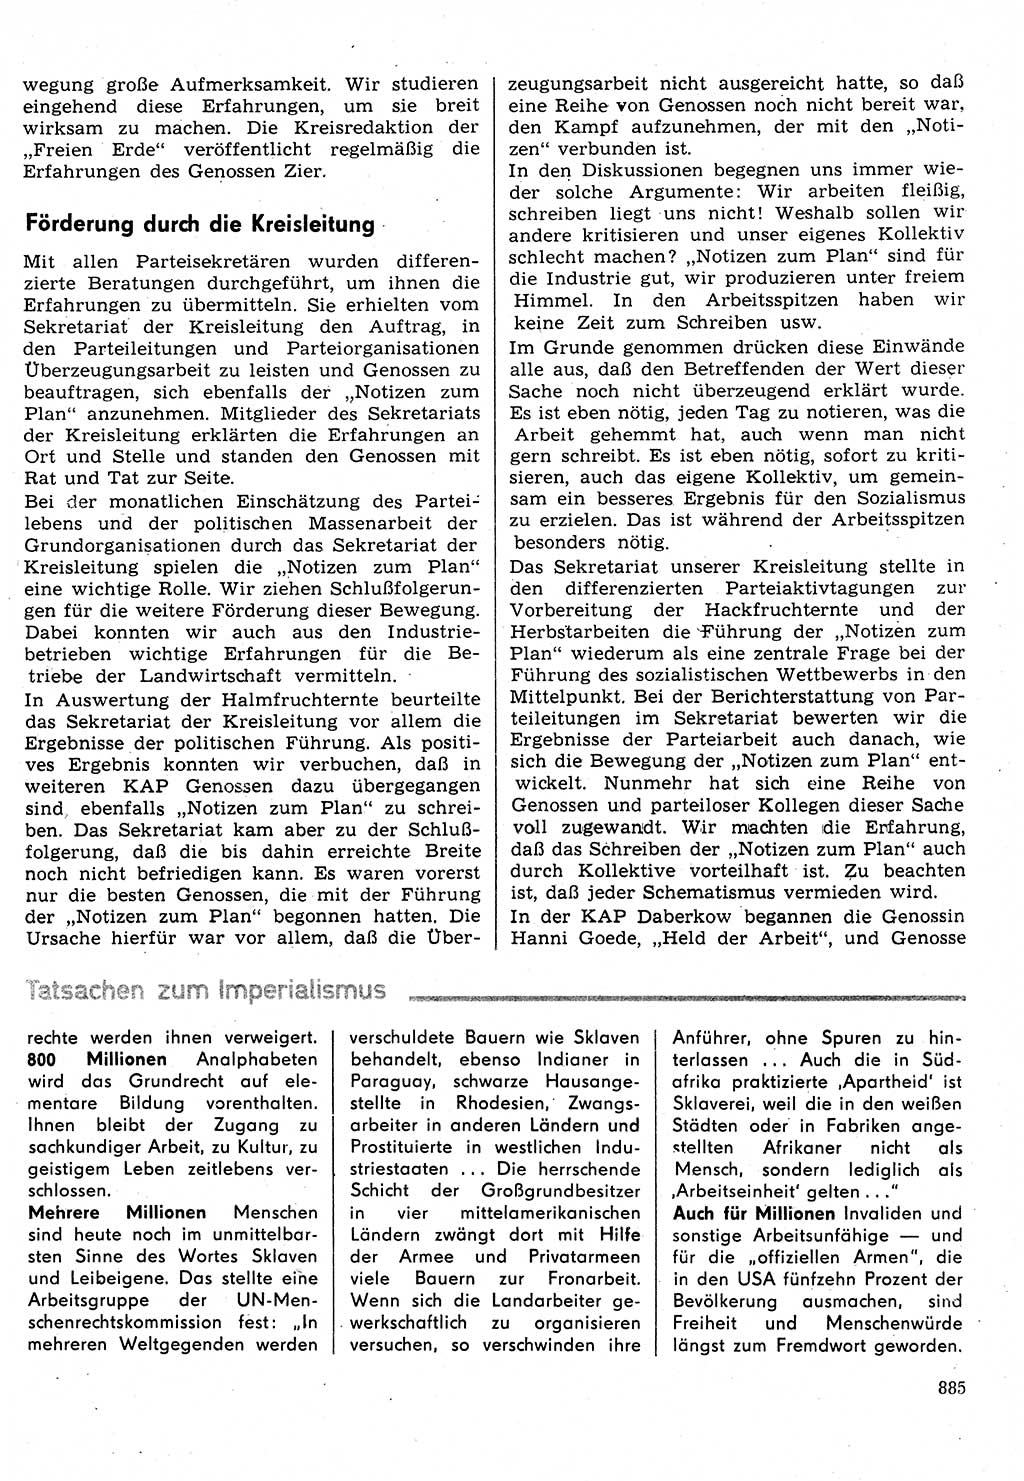 Neuer Weg (NW), Organ des Zentralkomitees (ZK) der SED (Sozialistische Einheitspartei Deutschlands) für Fragen des Parteilebens, 31. Jahrgang [Deutsche Demokratische Republik (DDR)] 1976, Seite 885 (NW ZK SED DDR 1976, S. 885)